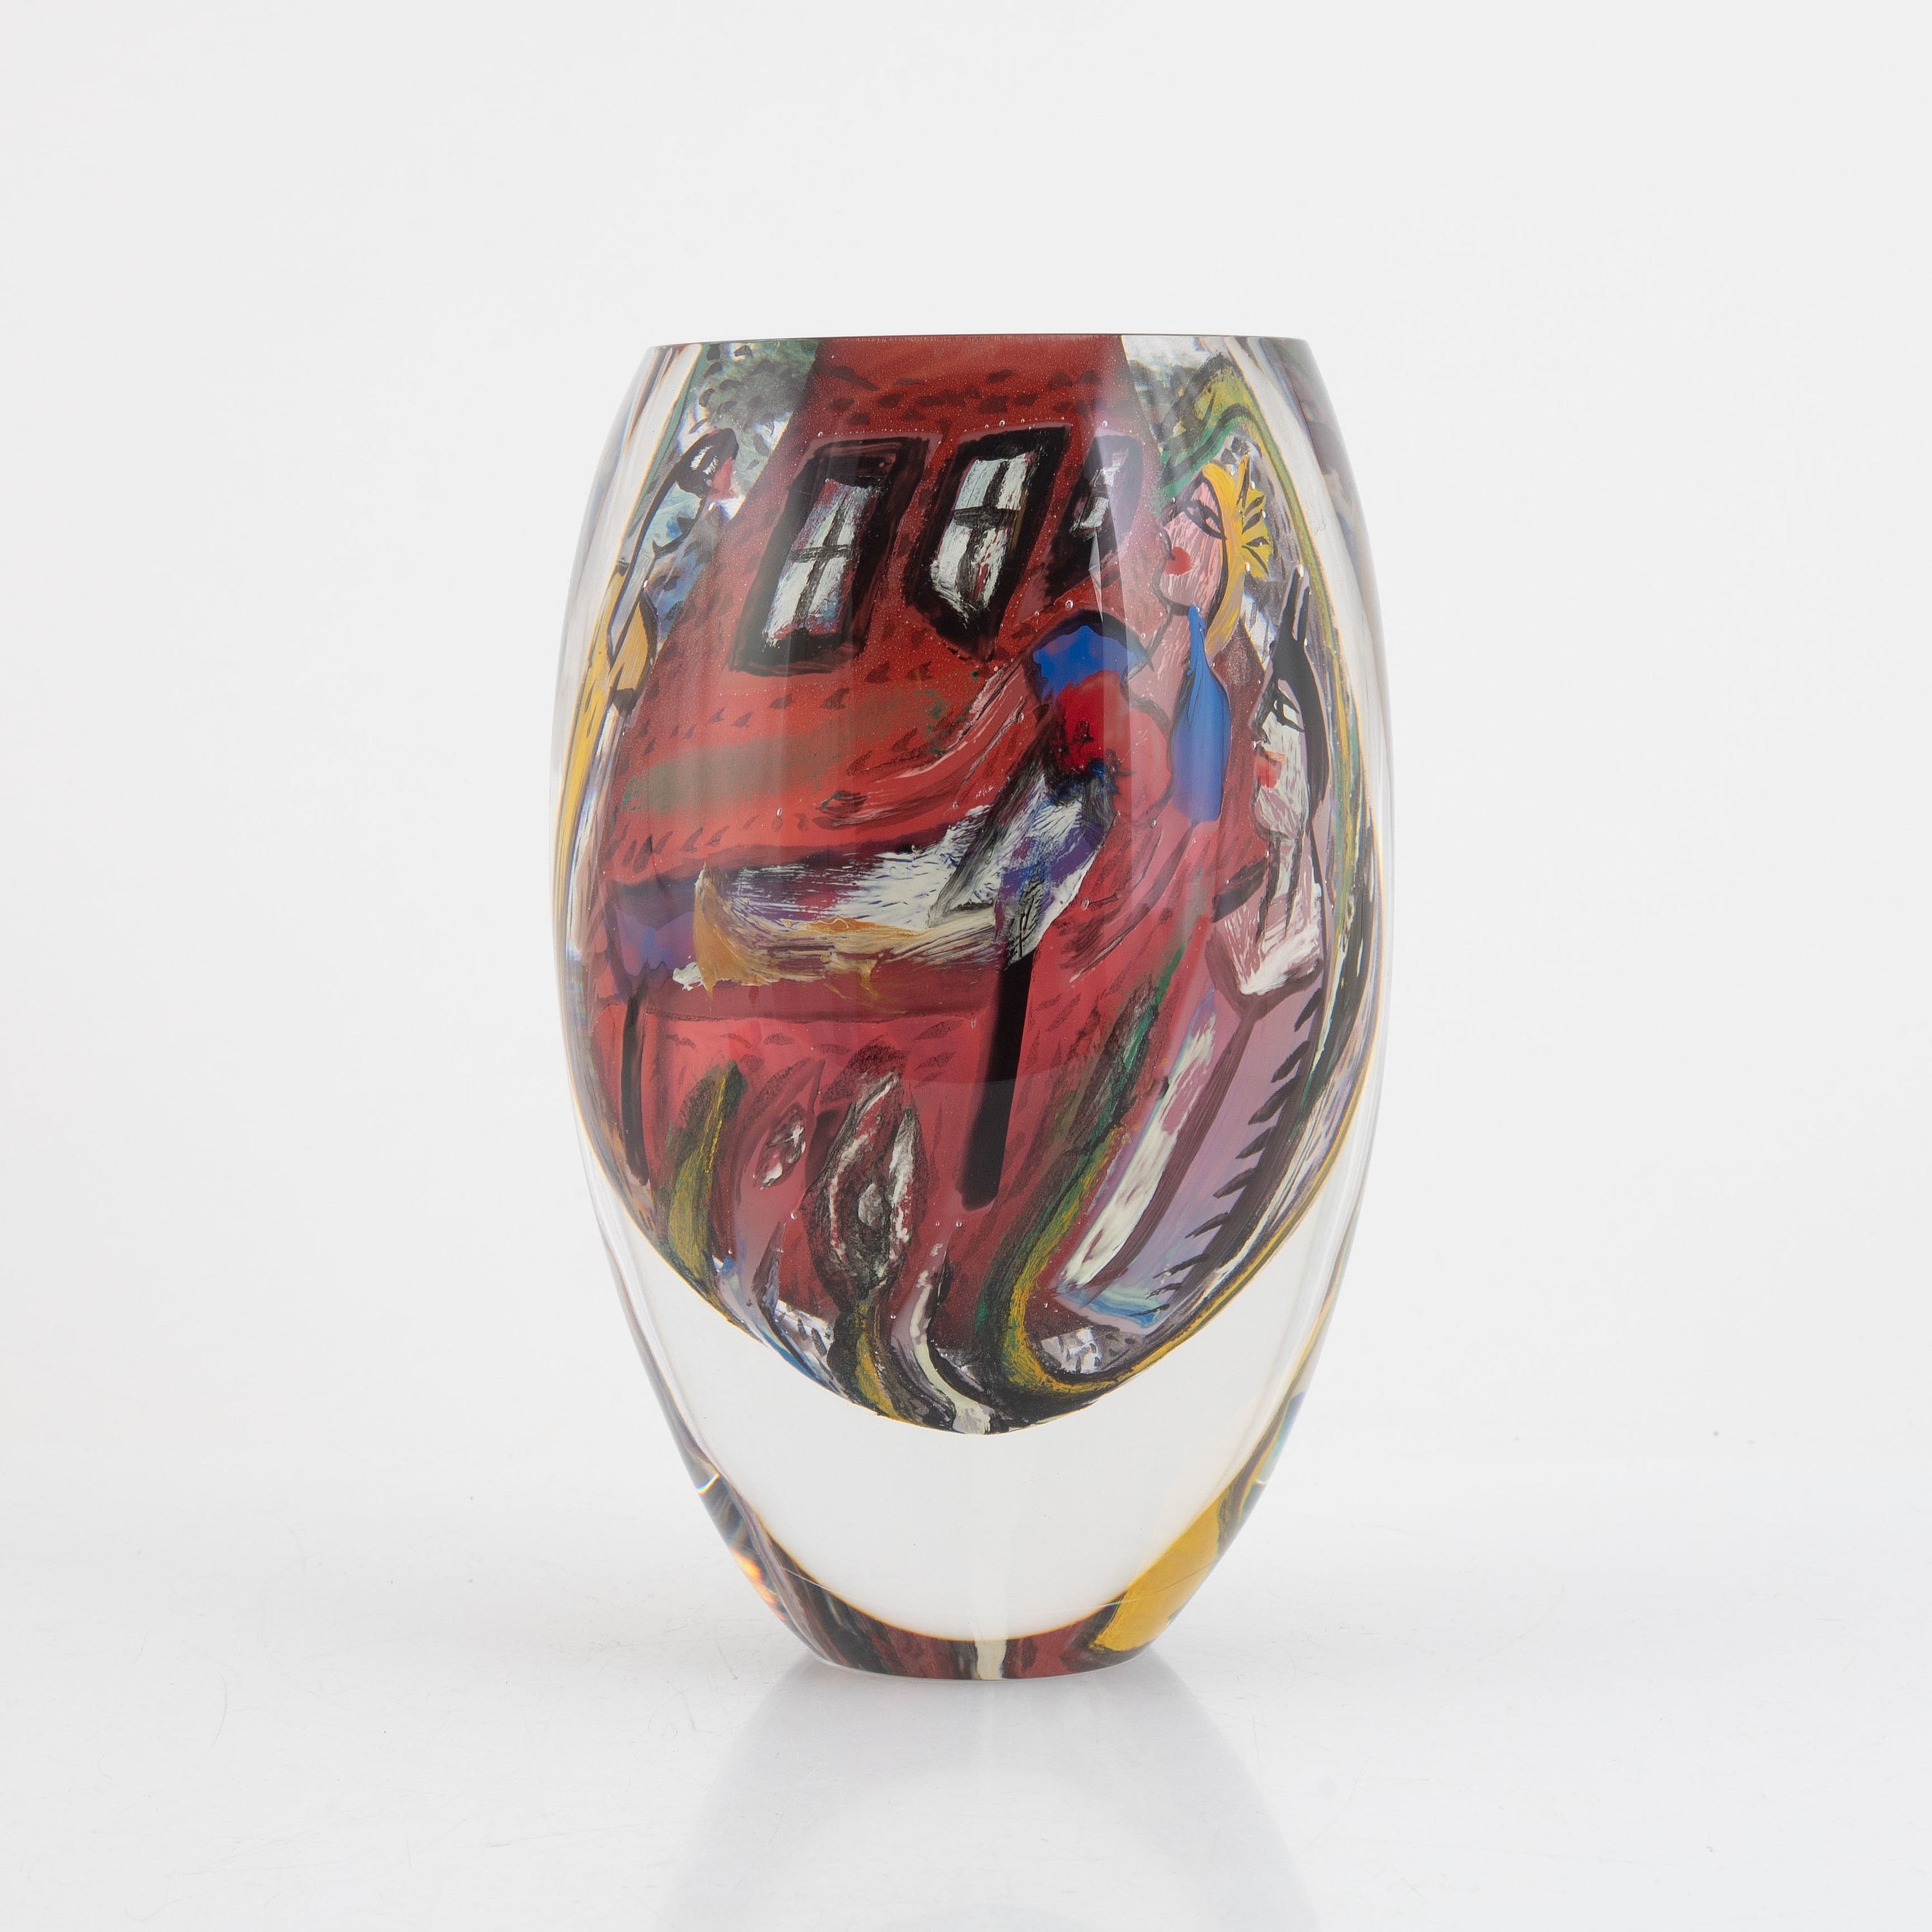 a unique glass vase, Kosta Boda, Sweden - Ulrica Hydman-Vallien